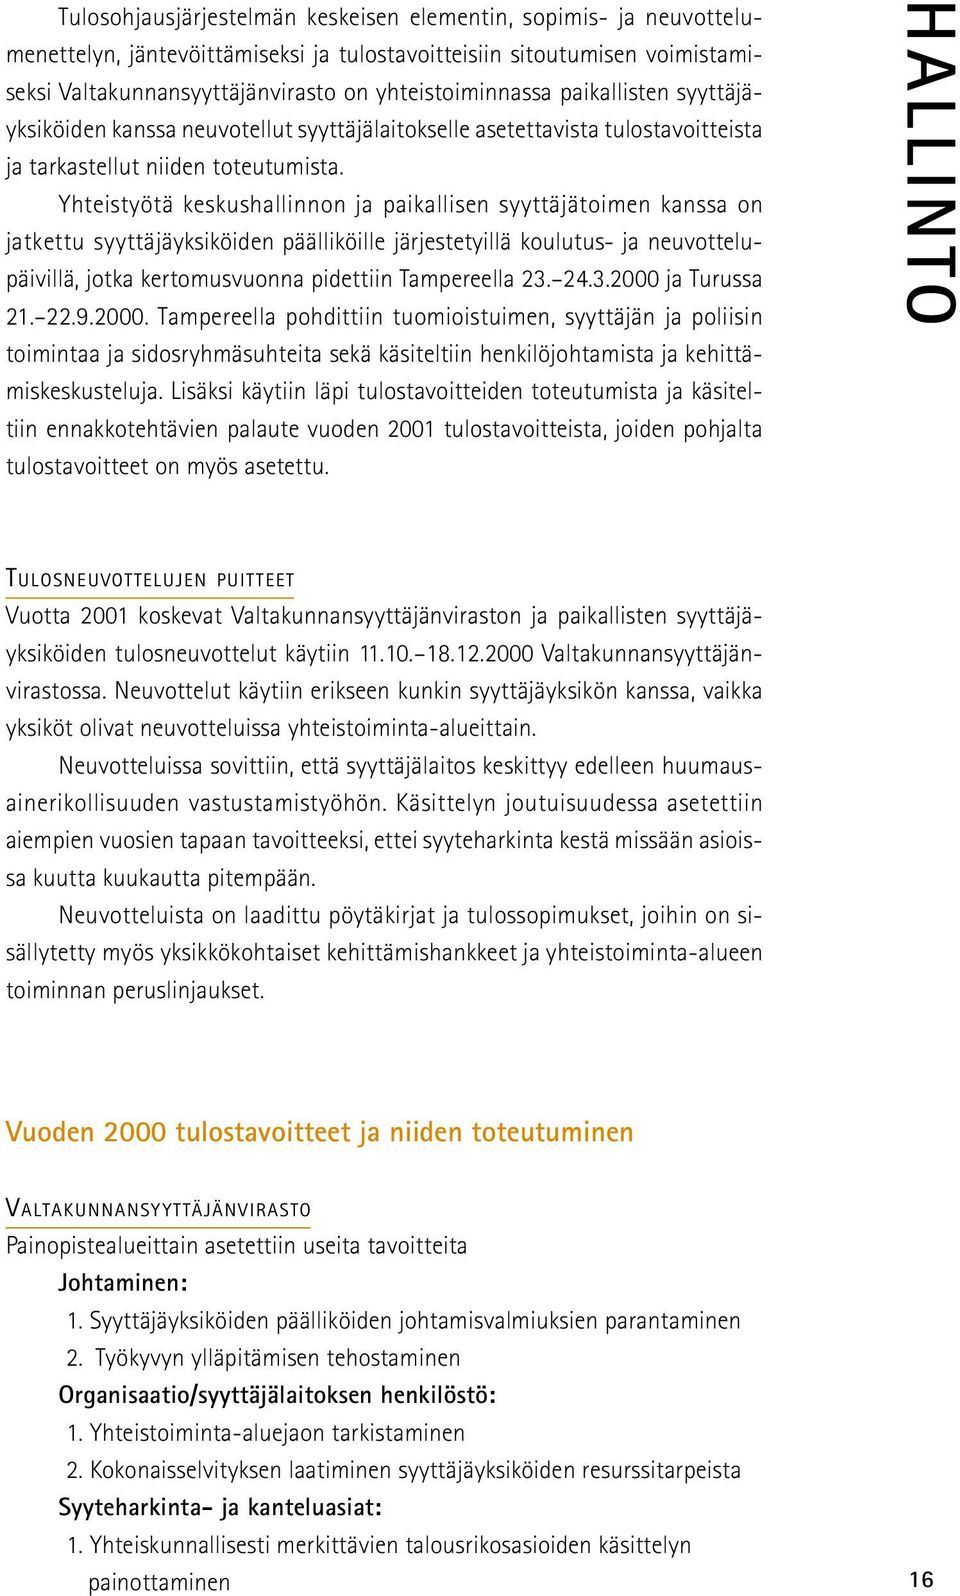 Yhteistyötä keskushallinnon ja paikallisen syyttäjätoimen kanssa on jatkettu syyttäjäyksiköiden päälliköille järjestetyillä koulutus- ja neuvottelupäivillä, jotka kertomusvuonna pidettiin Tampereella